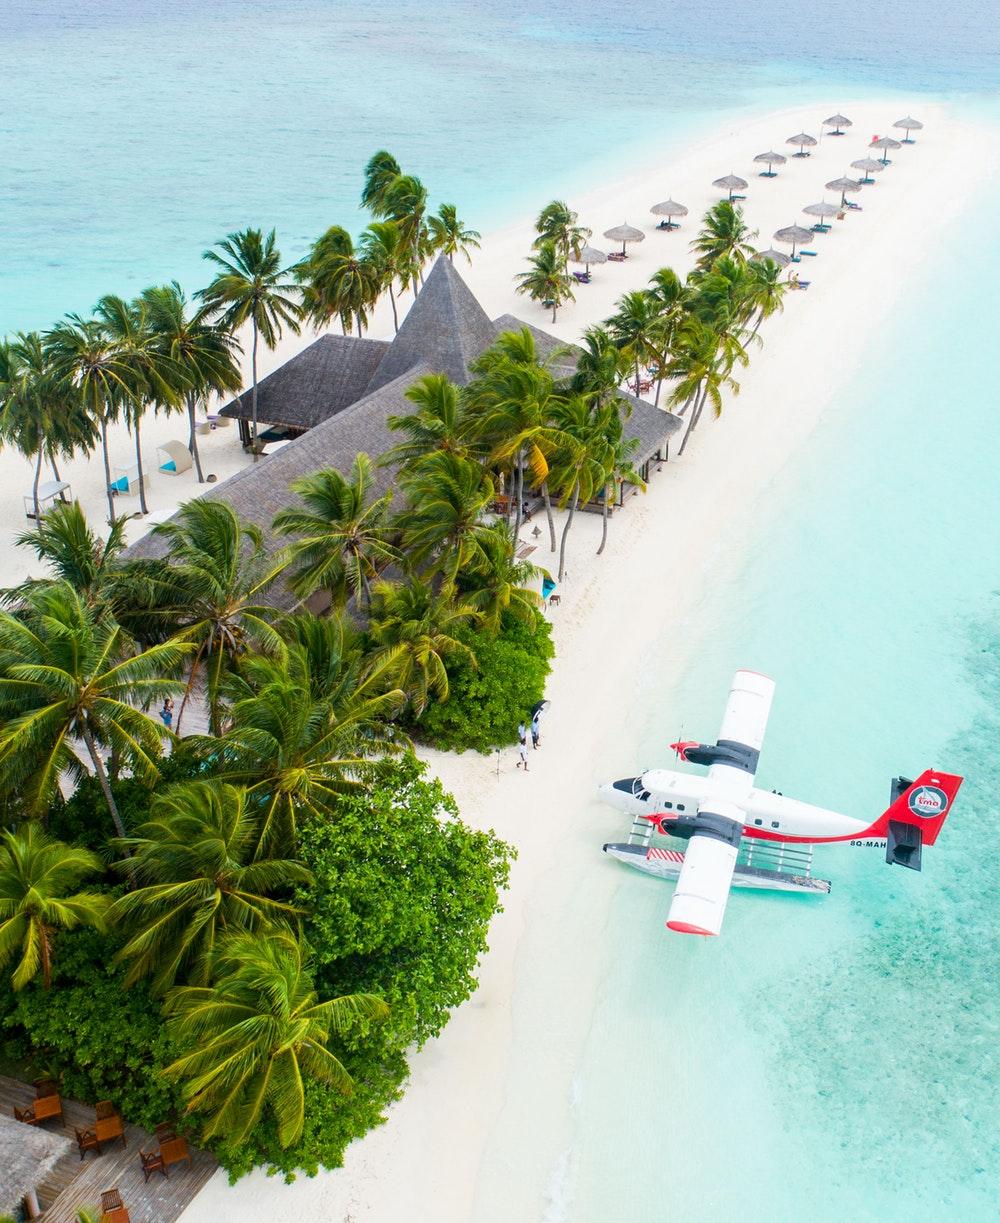 Maldives Picture [HD] [Scenic Travel Photo]. Download Free